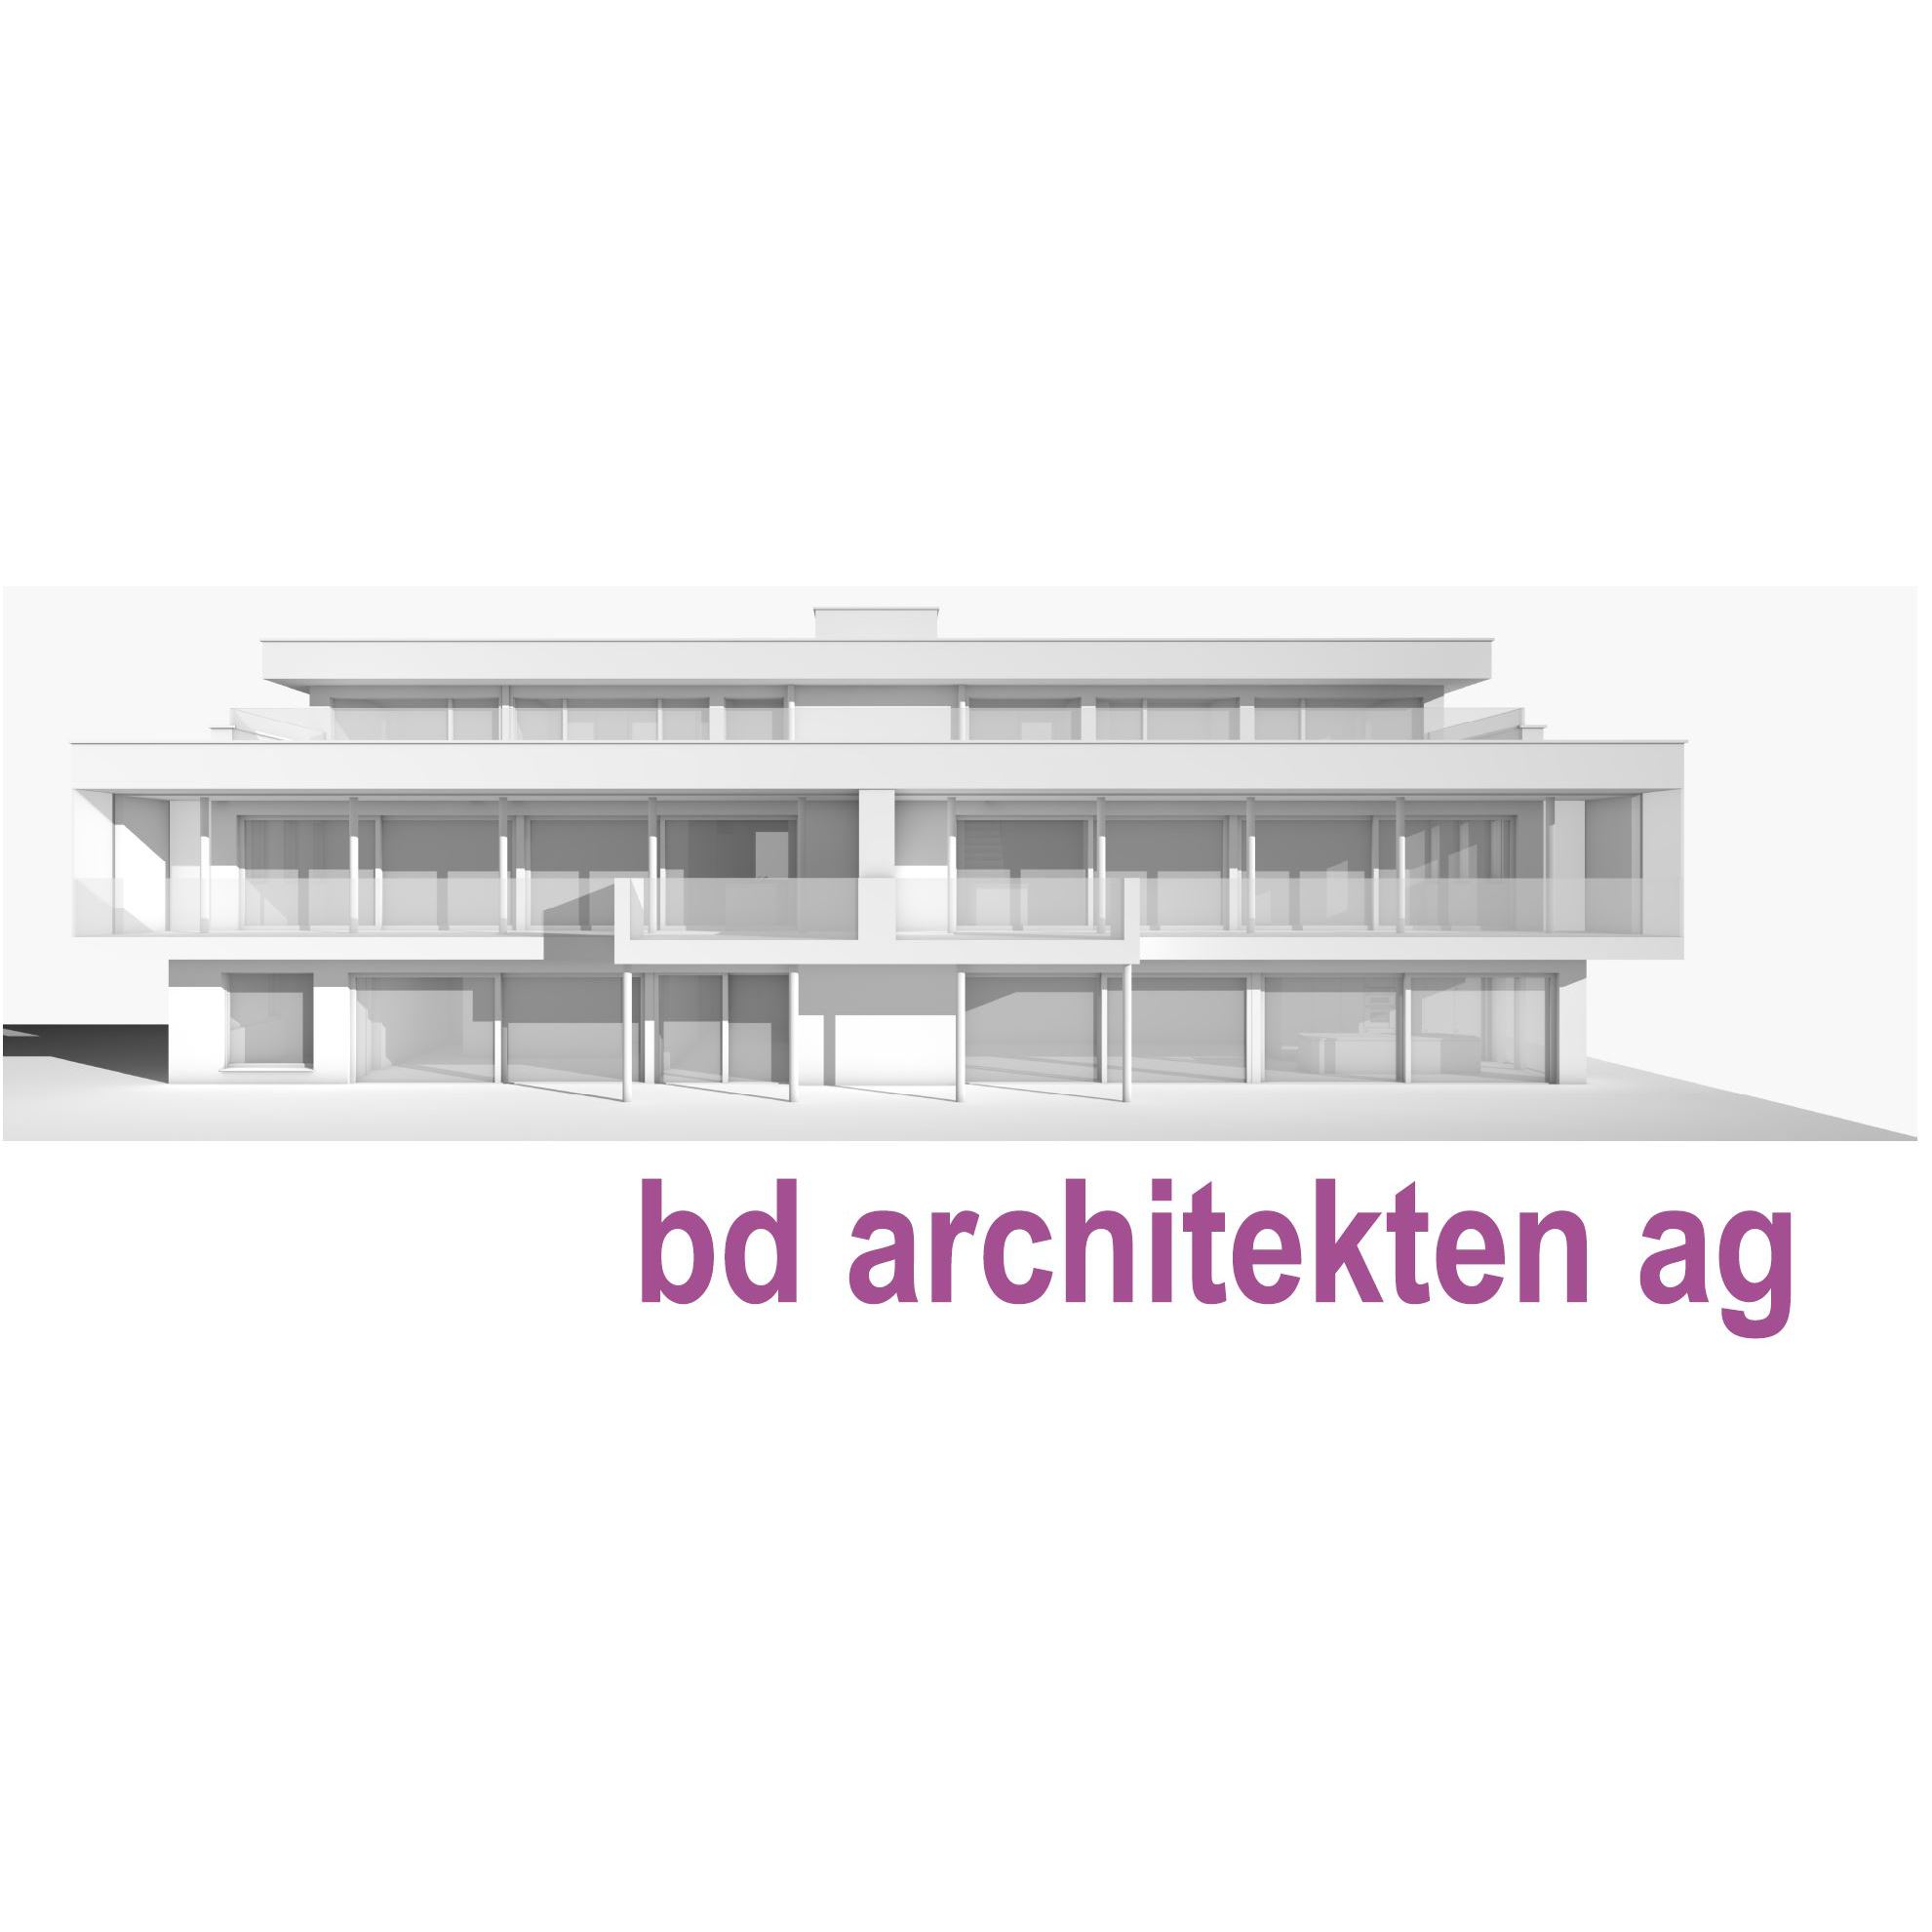 bd architekten ag Logo